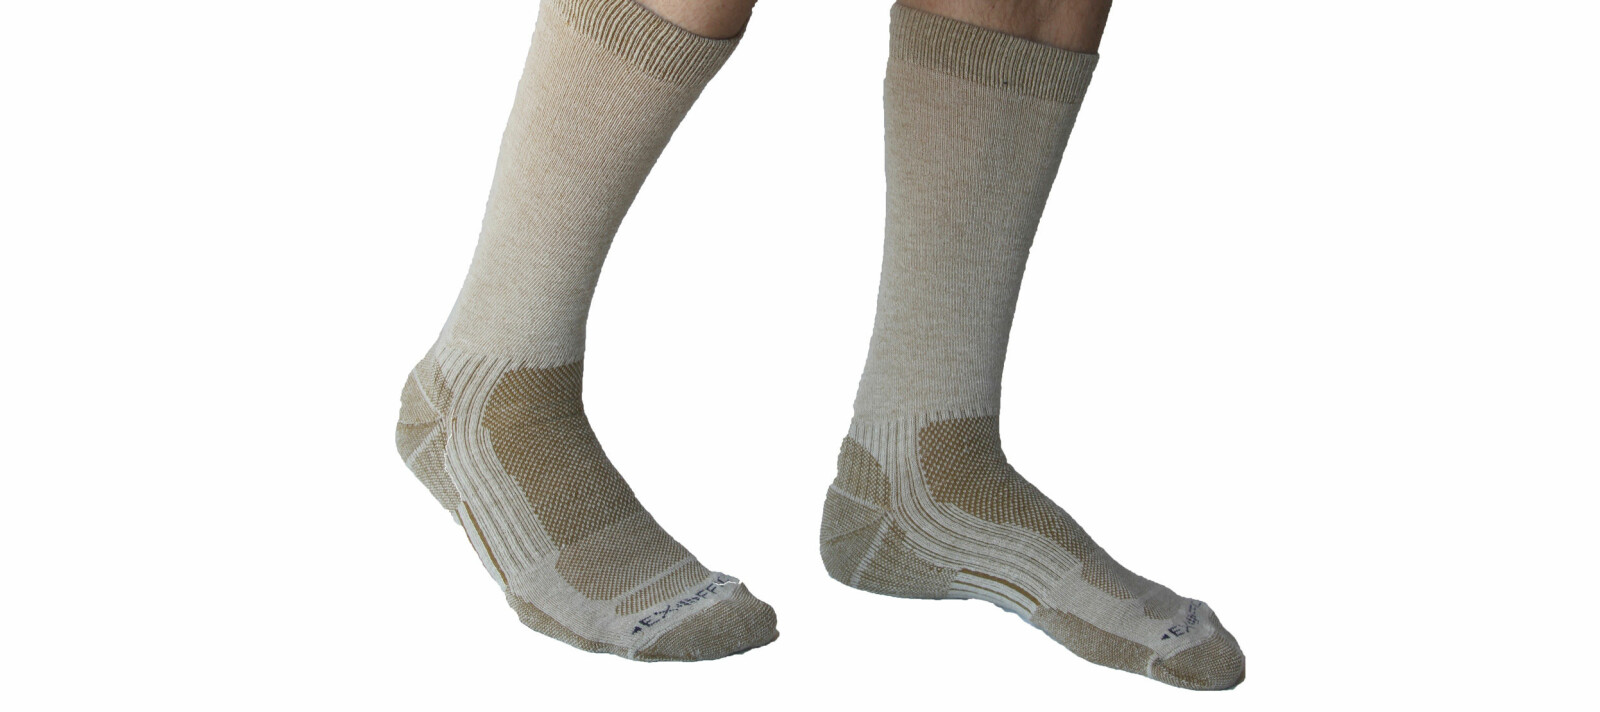 <b>MOT FLÅTT:</b> Sokker over anklene beskytter mot mygg. Disse sokkene fra ExOfficio er i tillegg innsatt med middelet Insect Shield, som beskytter mot flått, mygg, knott og andre insekter.